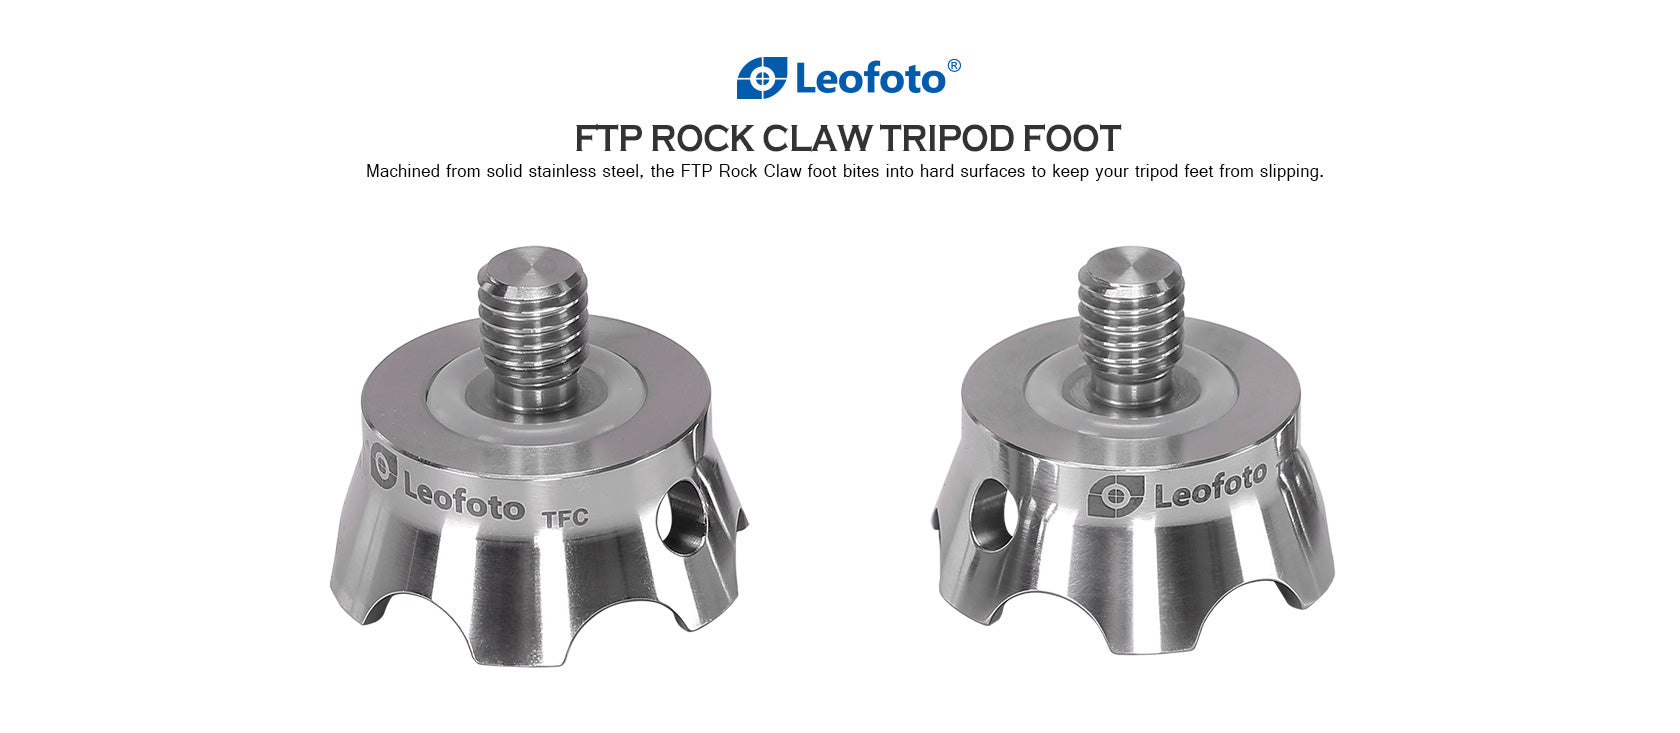 Leofoto TFC, TFC-S1/4, TFC-S3/8 | Set of 3 Tripod Claw Feet